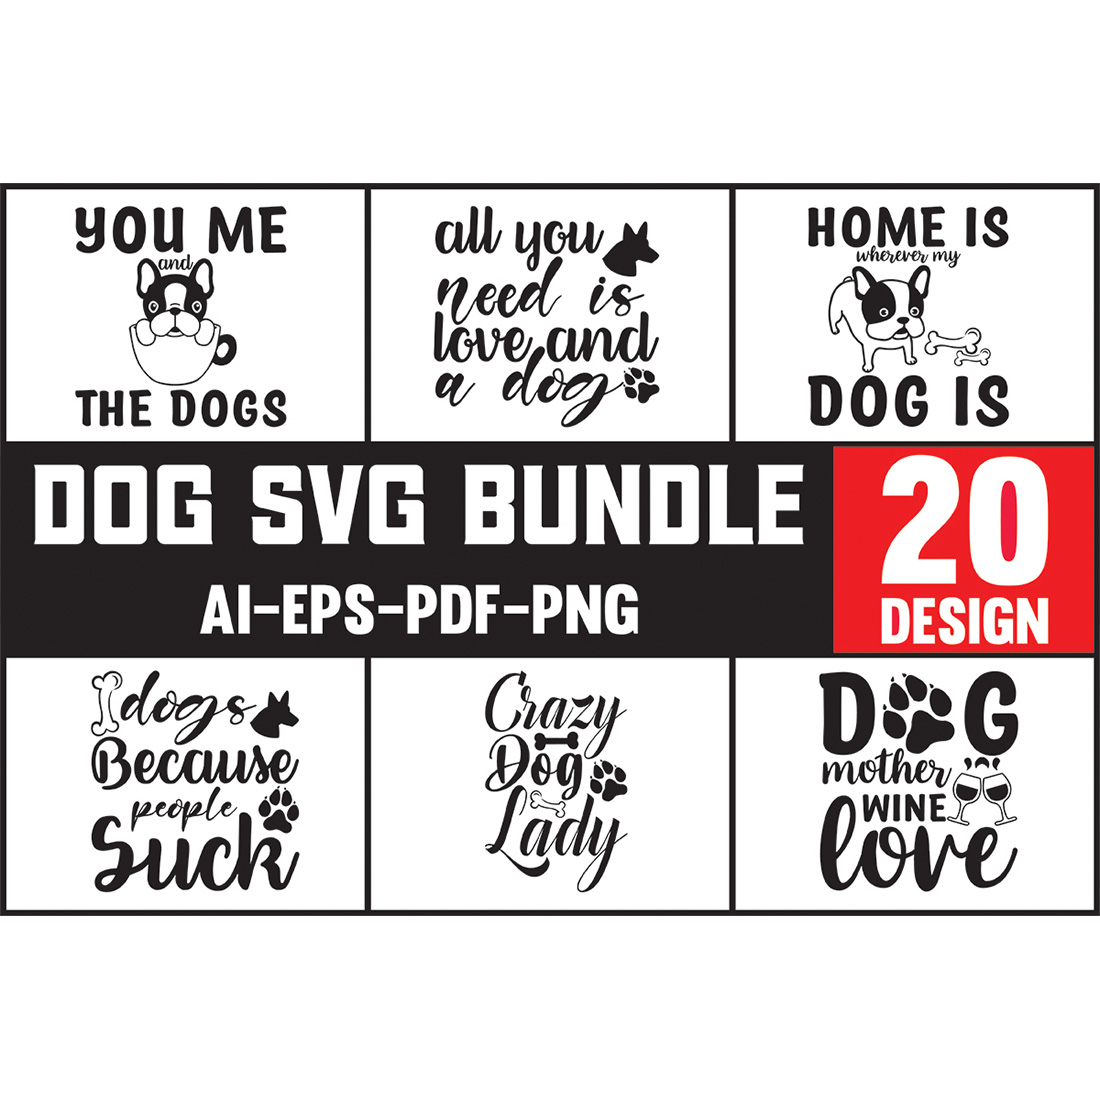 Dog svg bundle 20 designs.